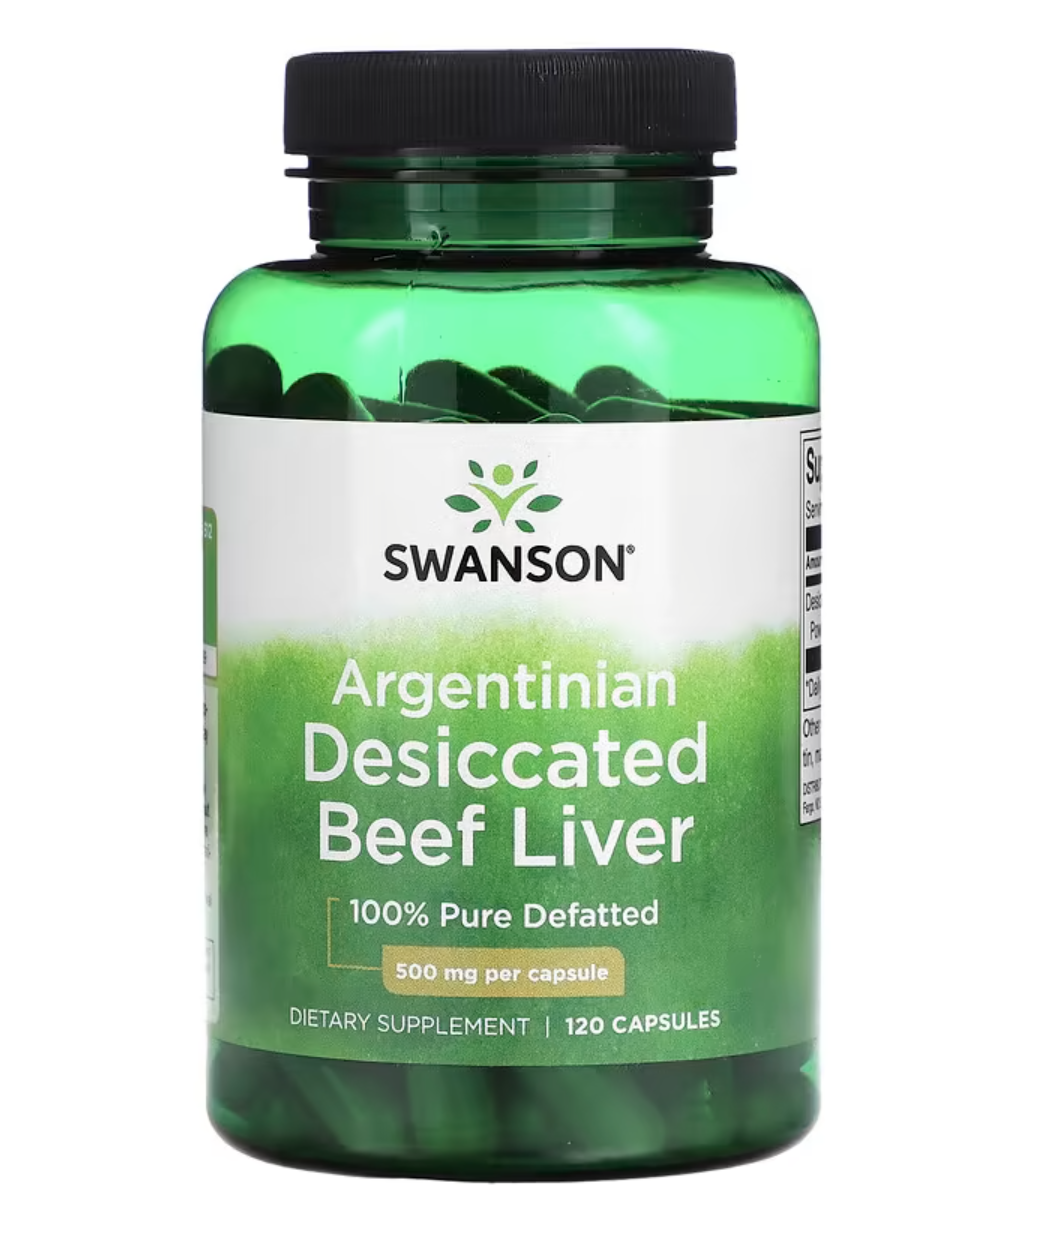 Swanson Argentinian Desiccated Beef liver, argentinská sušená hovězí játra, 500 mg, 120 kapslí Doplněk stravy